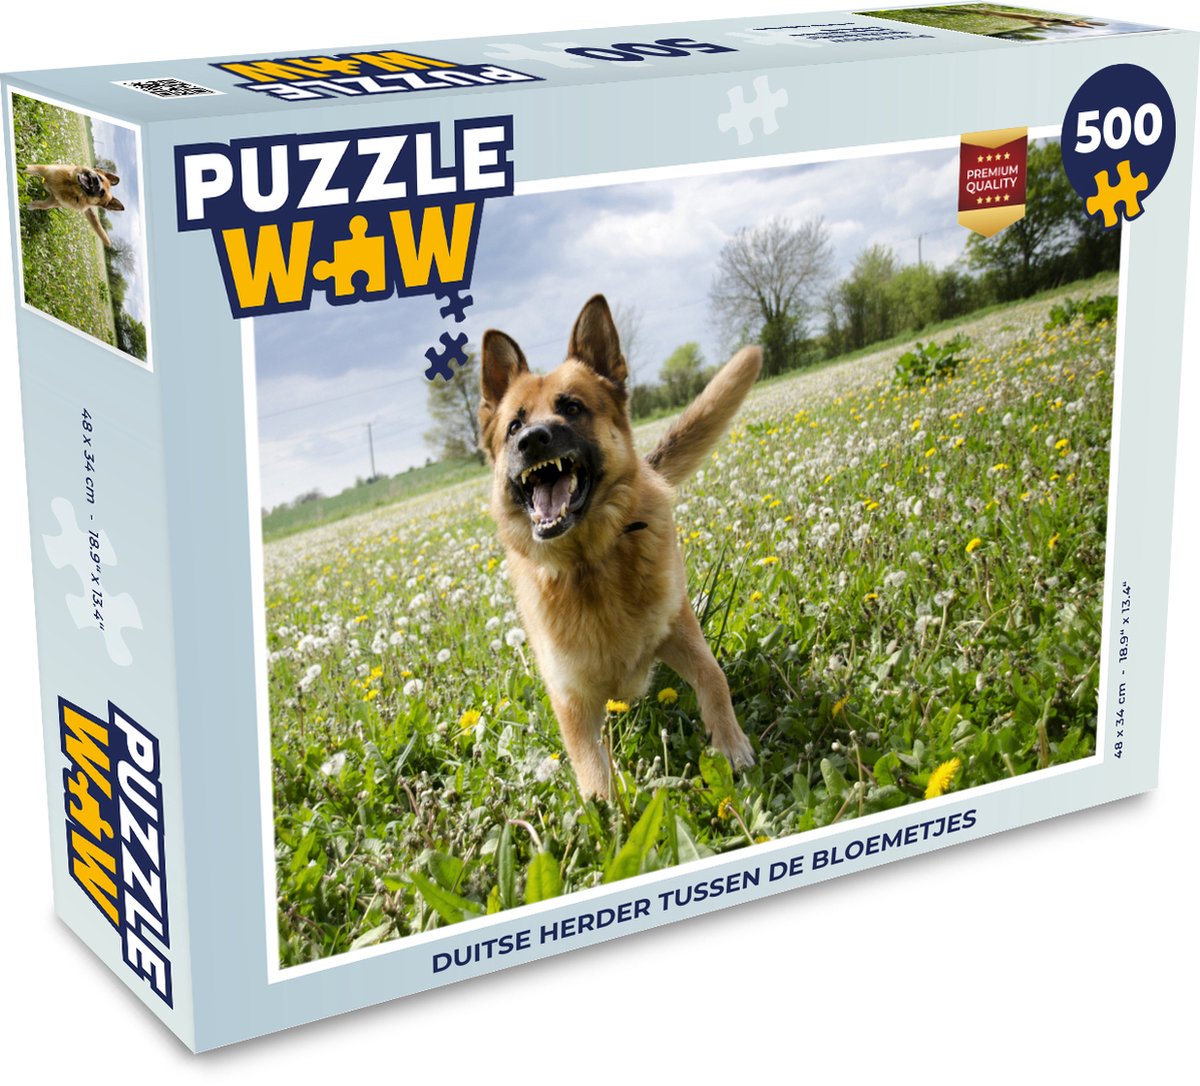 Afbeelding van product Puzzel 500 stukjes Duitse Herder - Duitse Herder tussen de bloemetjes - PuzzleWow heeft +100000 puzzels